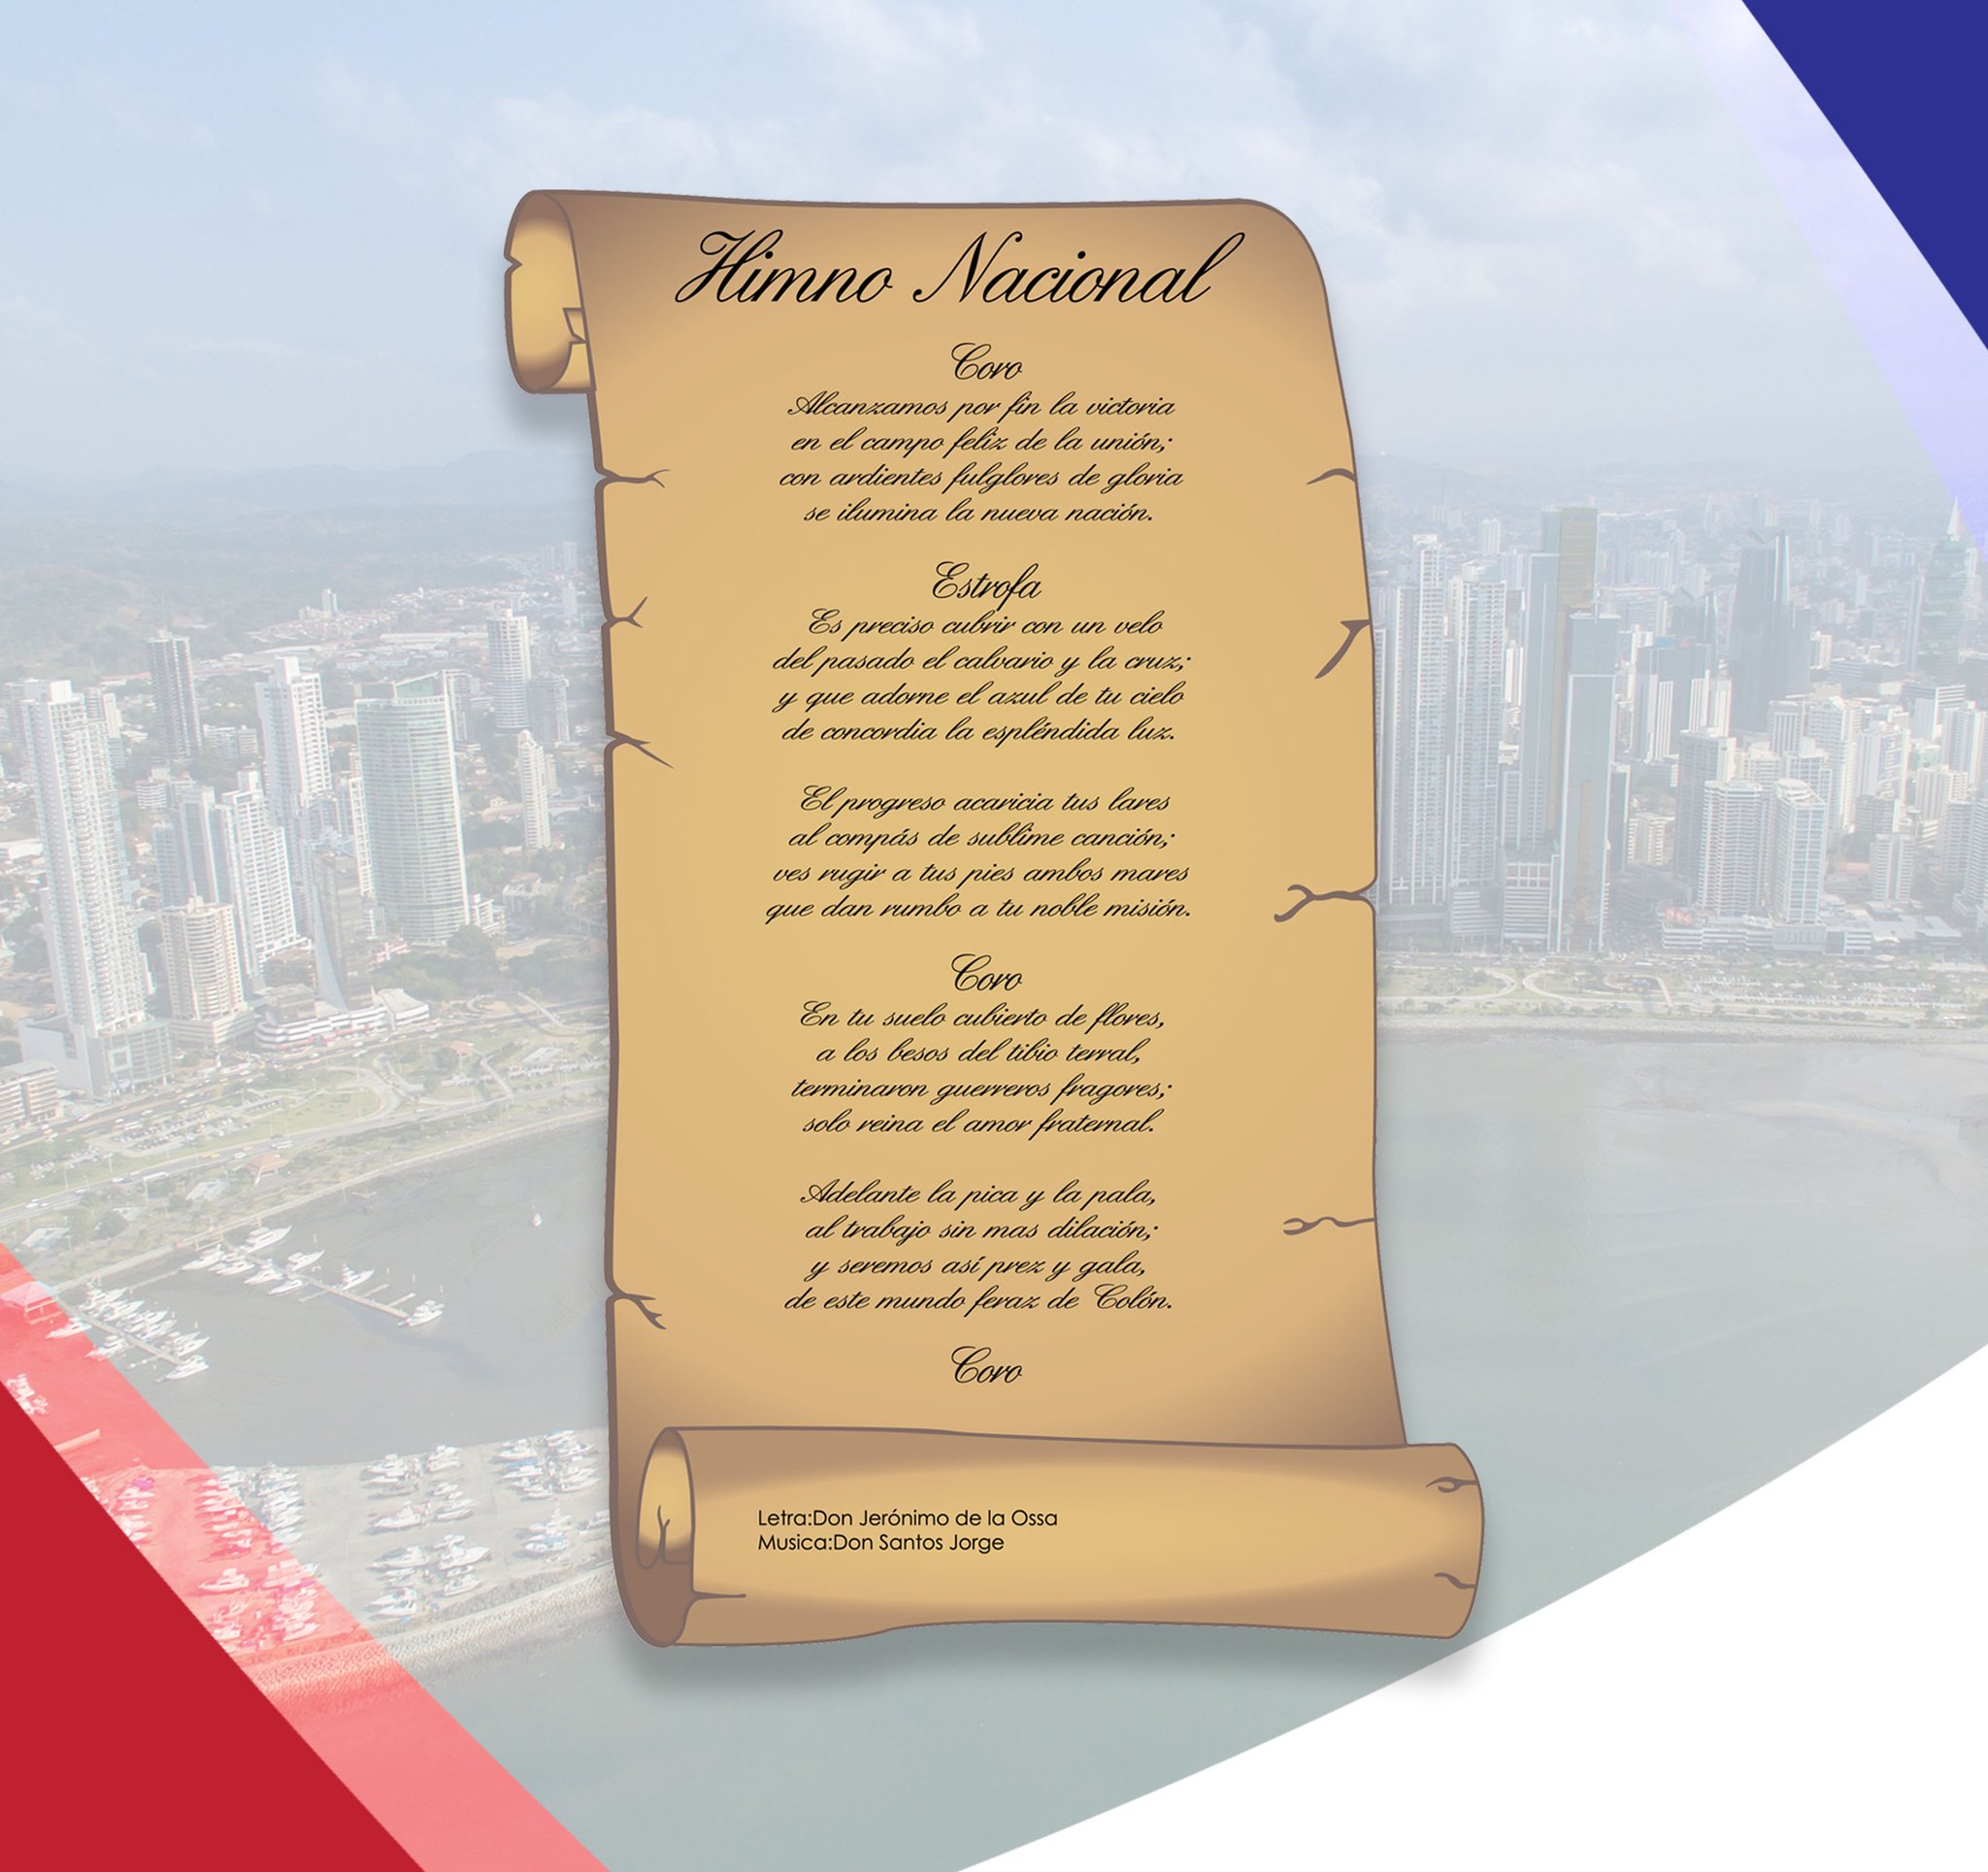 Panameñistas on Twitter "El Himno Nacional de Panamá es